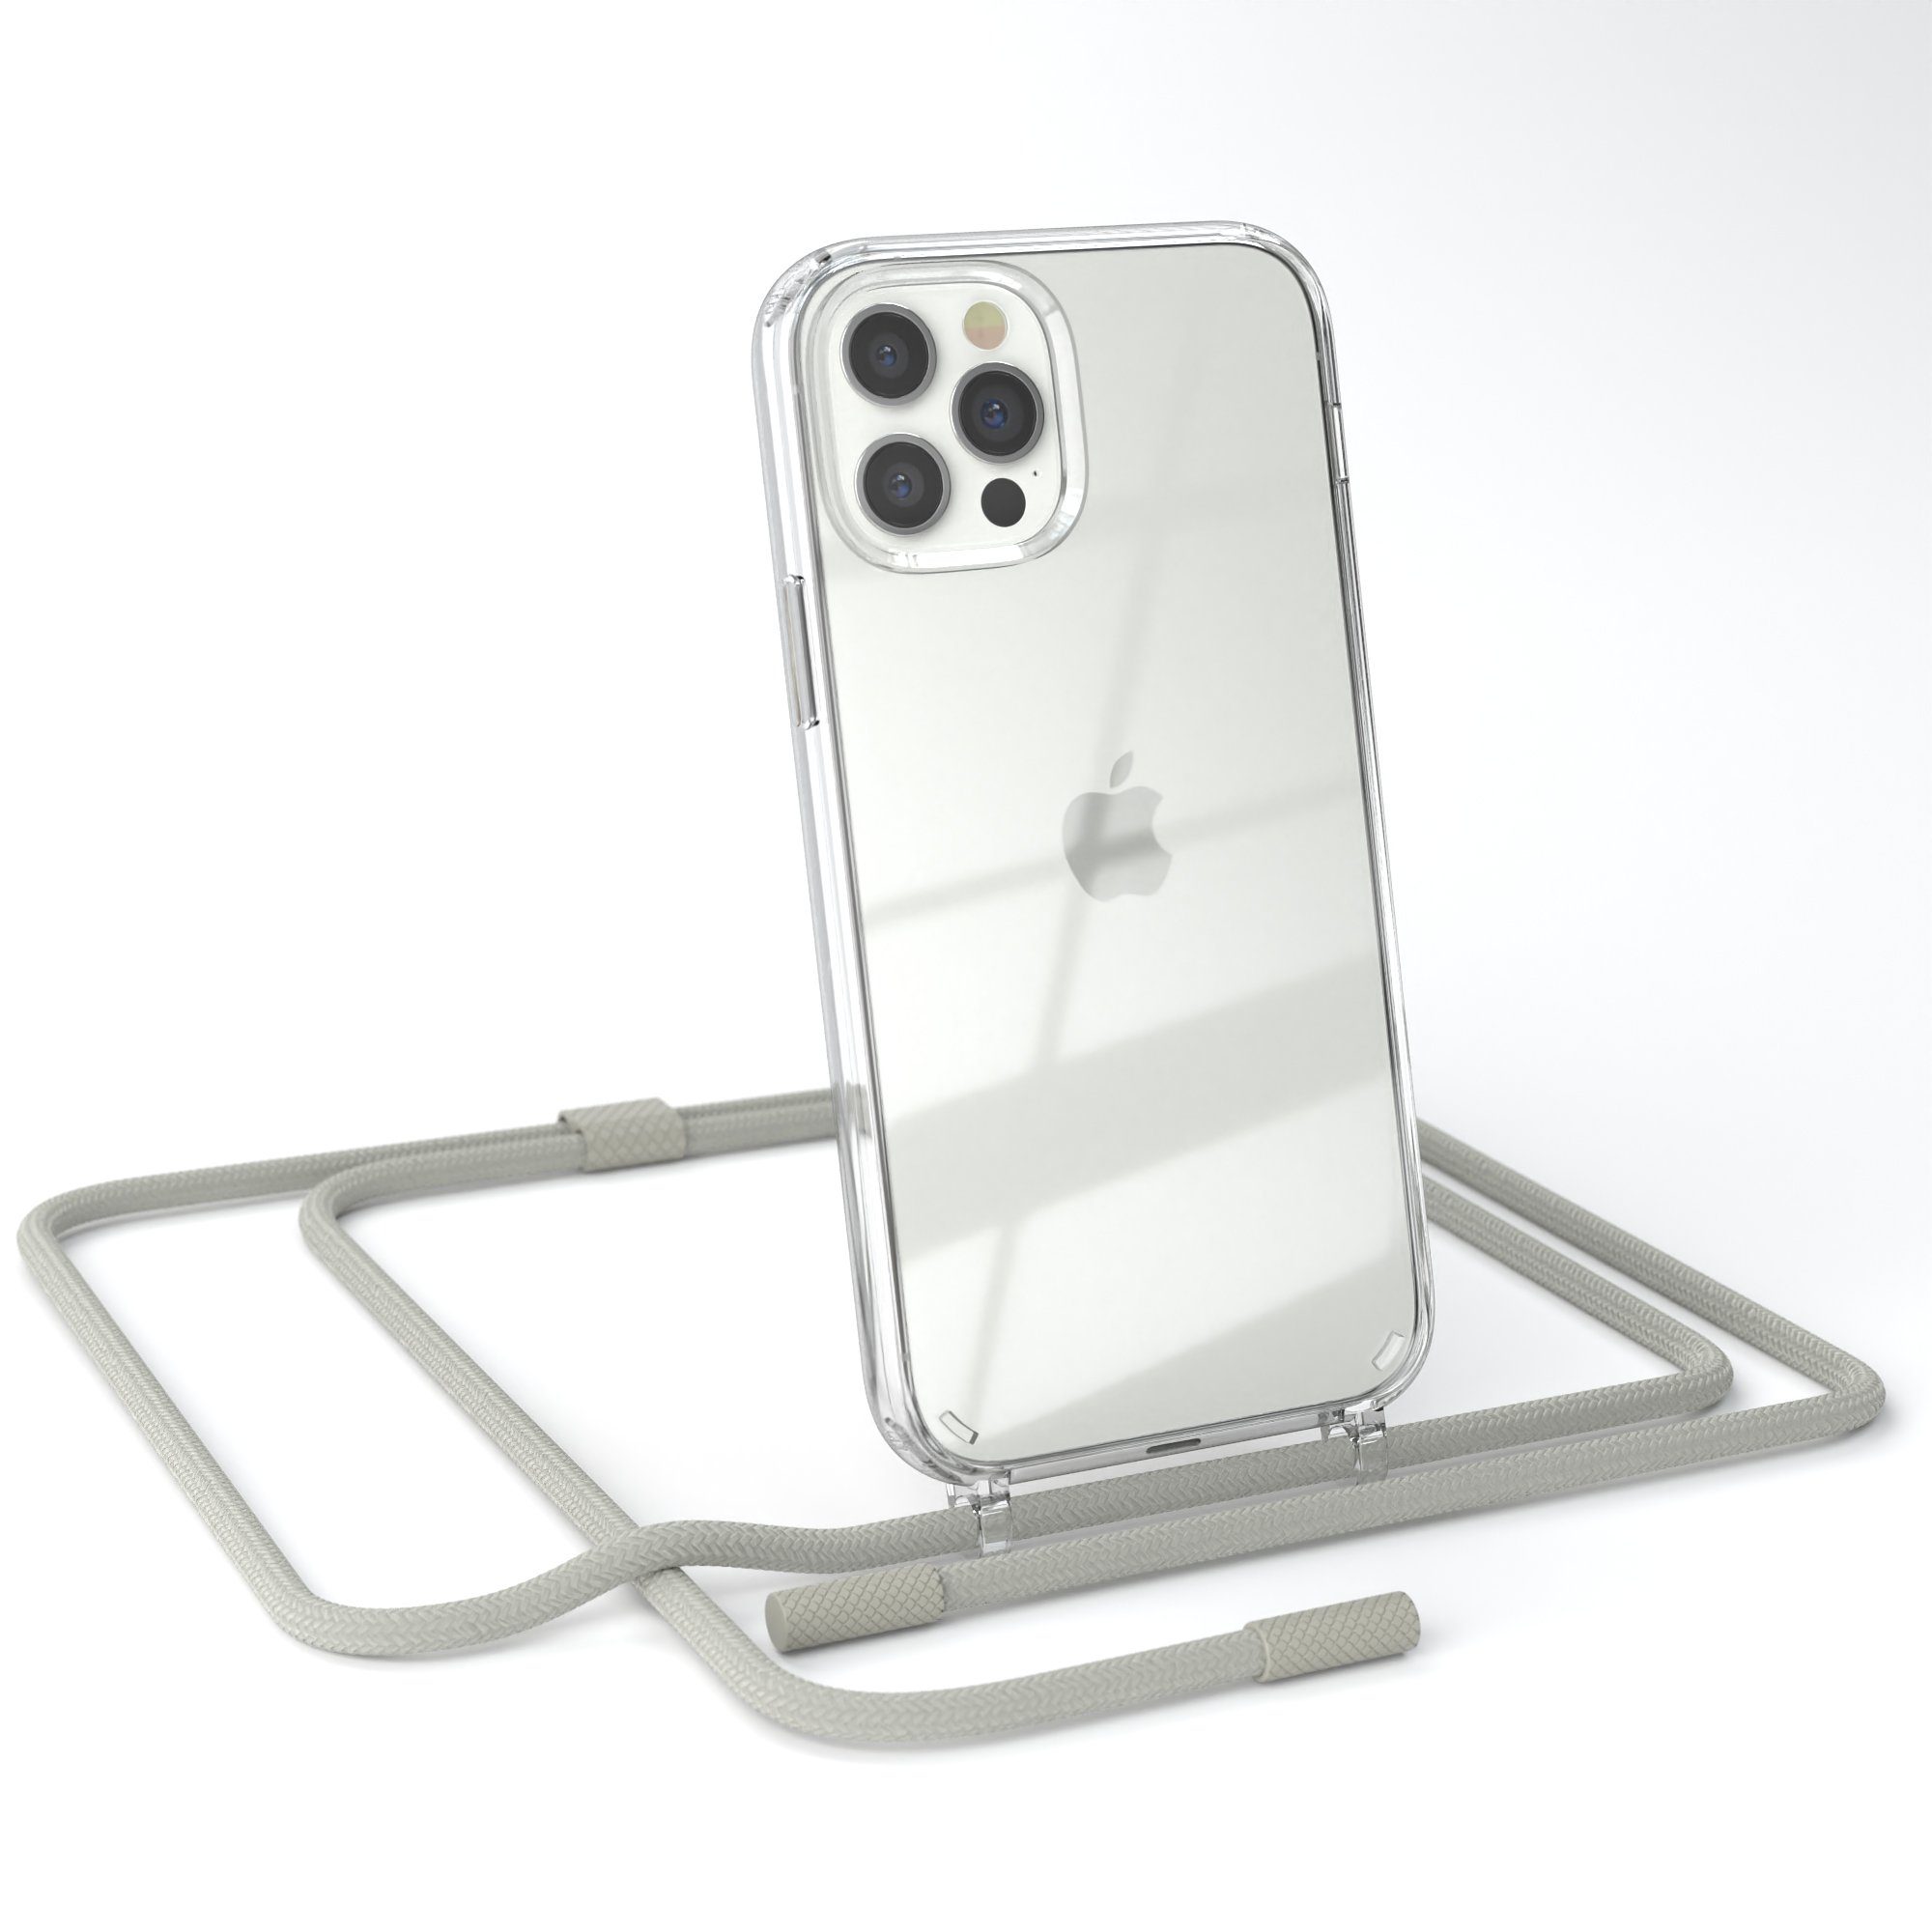 EAZY CASE Handykette Silikon Kette für Apple iPhone 12 iPhone 12 Pro 6,1 Zoll, Schutzhülle zum Umhängen Hülle mit Umhängeband Kettenhülle Grau Taupe